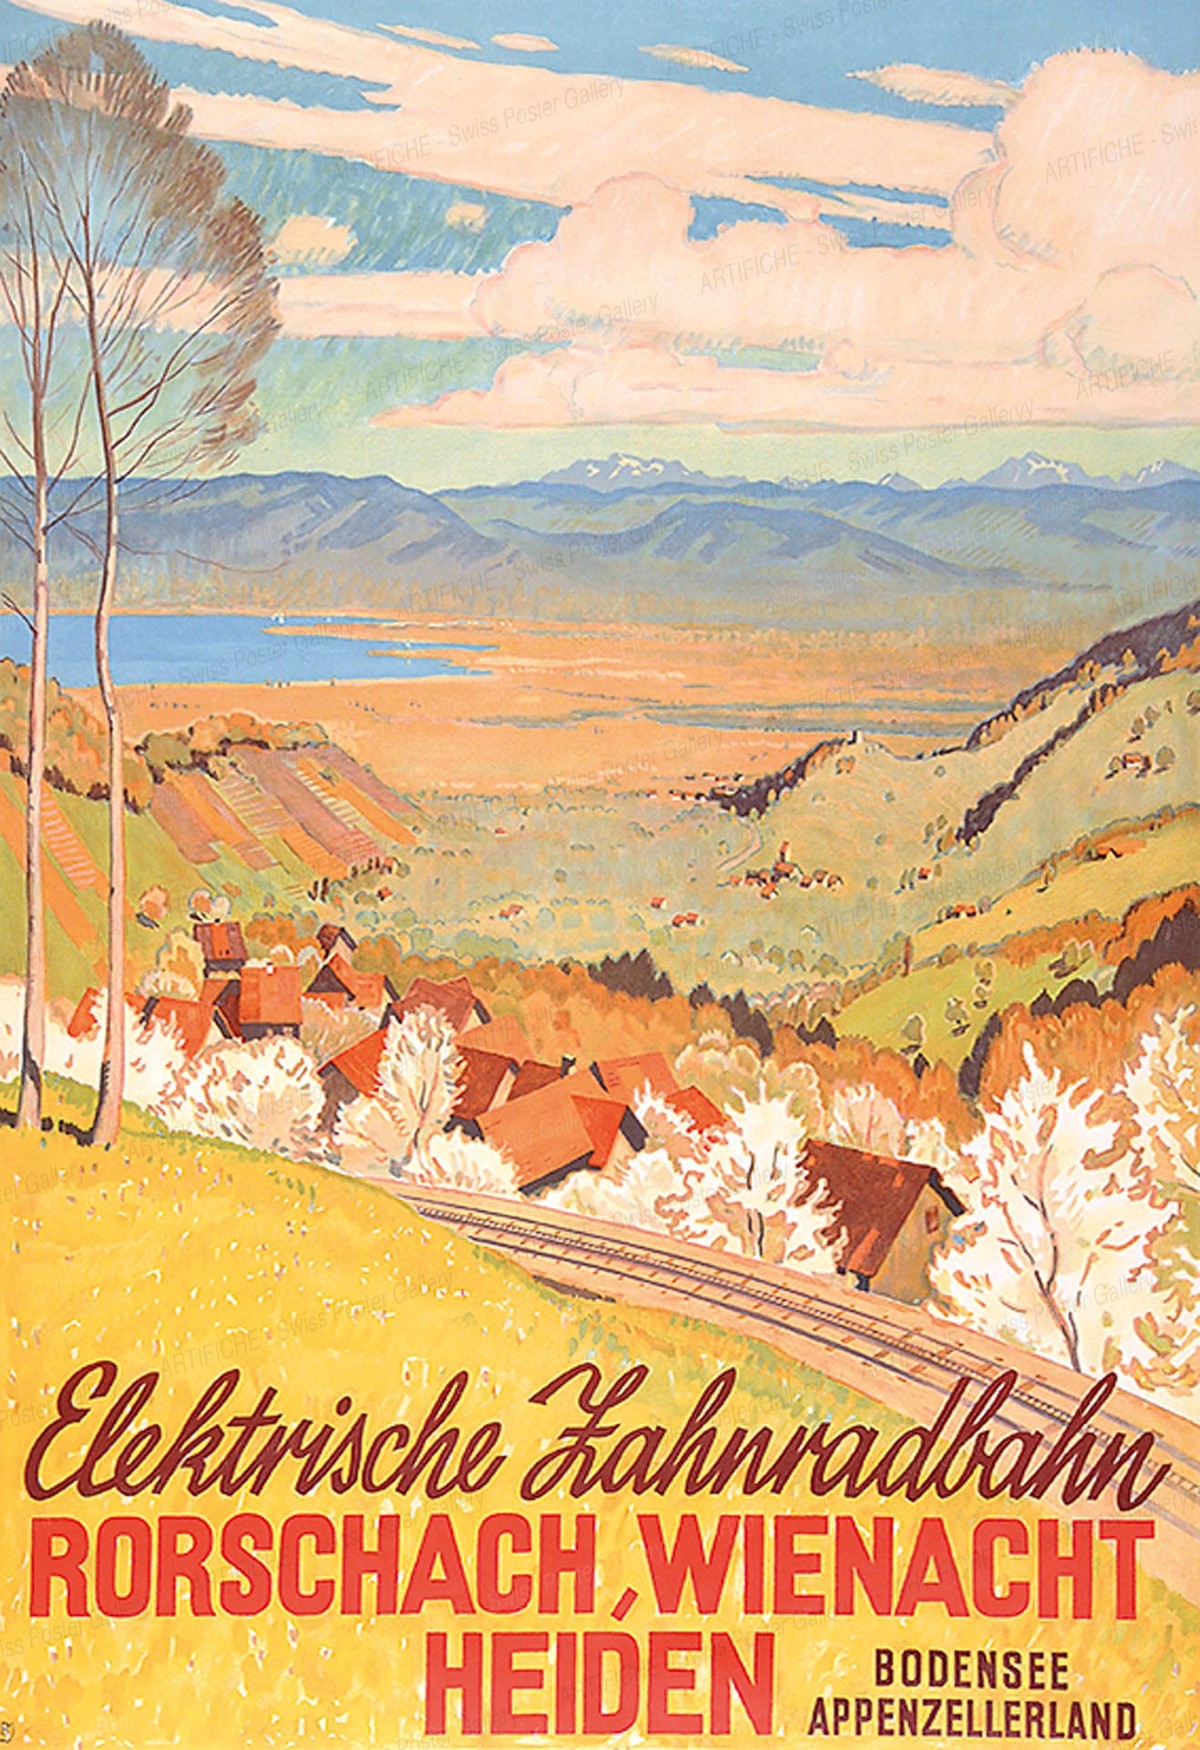 Elektrische Zahnradbahn Rorschach, Wienacht, Heiden – Bodensee Appenzellerland, Wilhelm Friedrich Burger